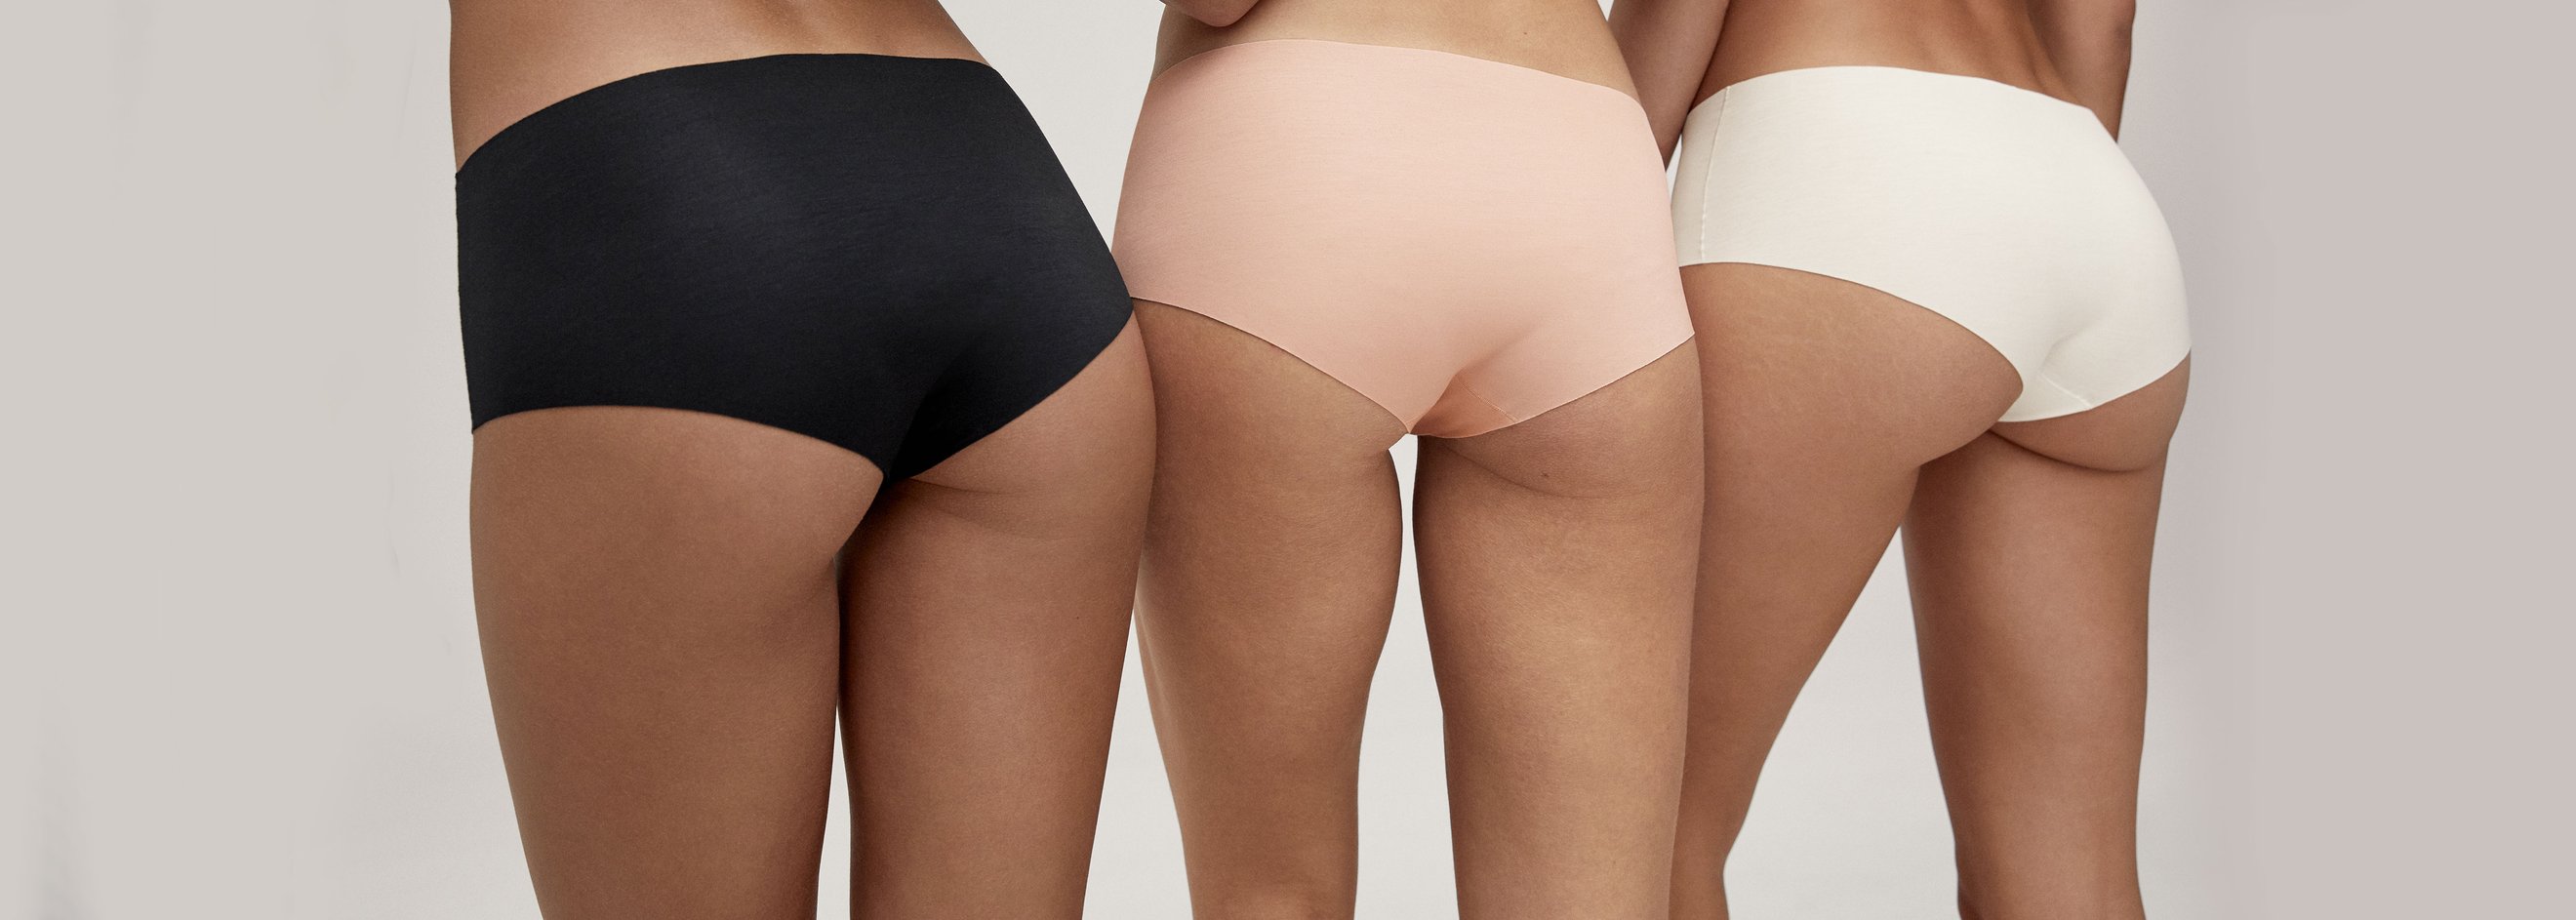 Seamless Underwear Briefs For Women Women's Fashion Charming